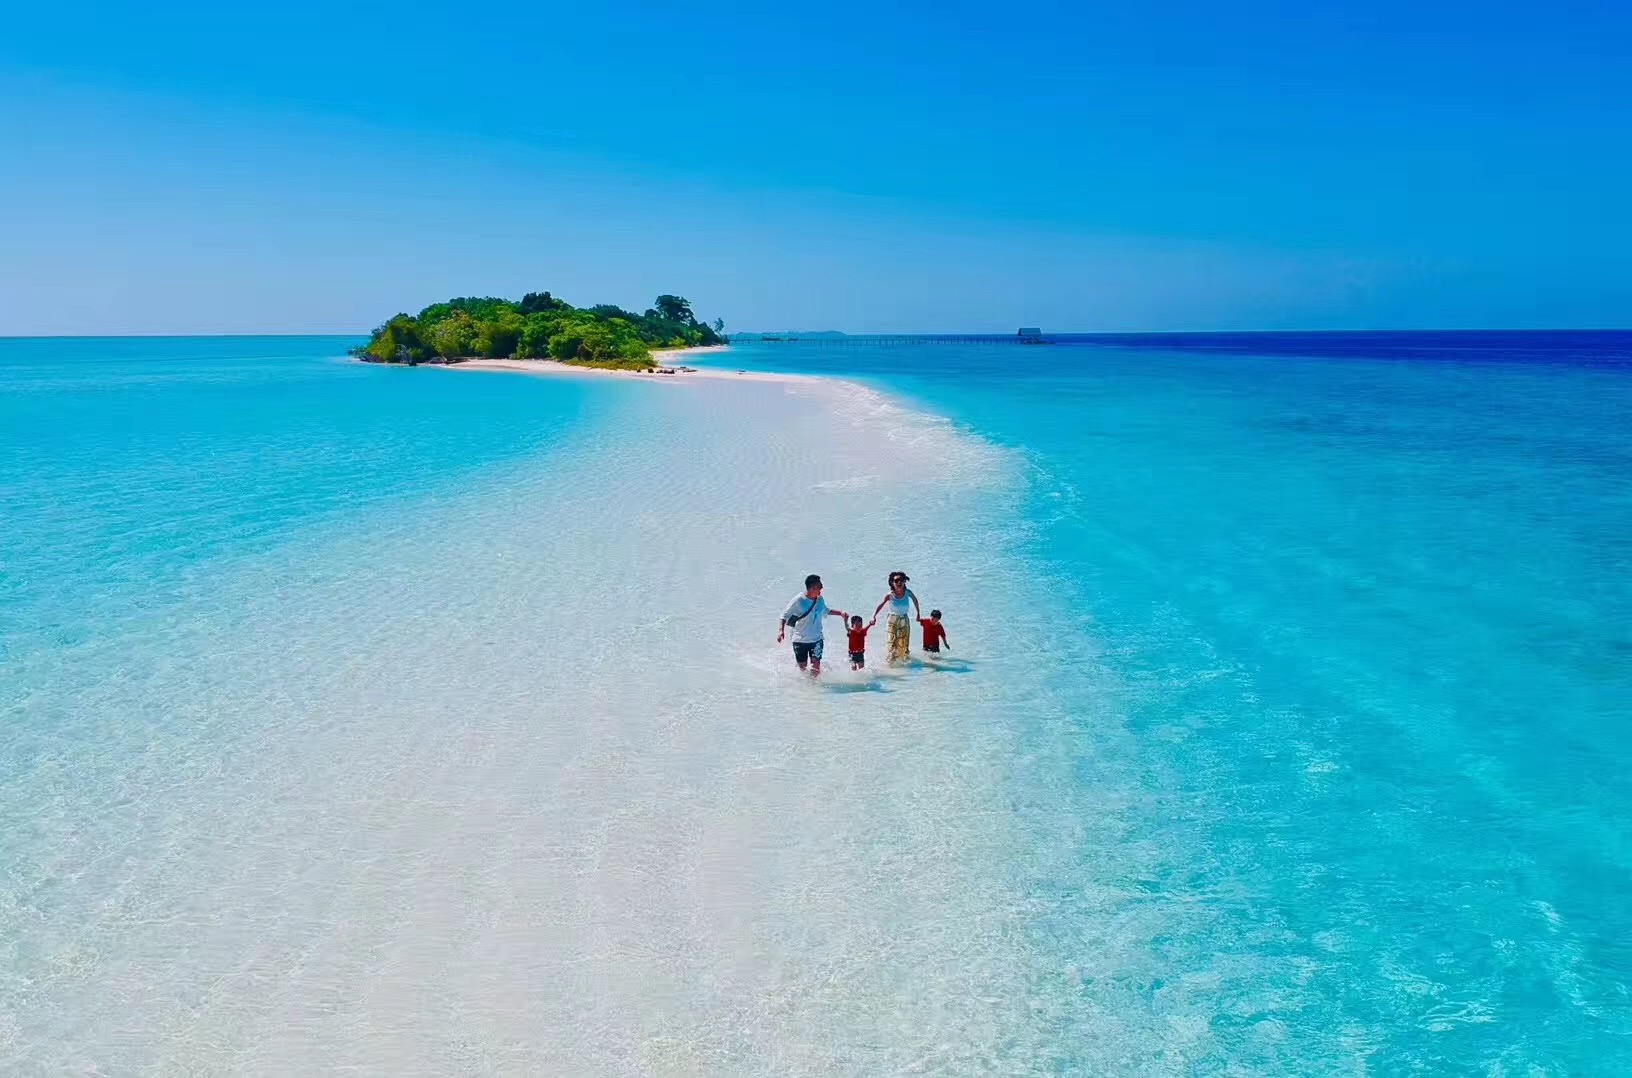 汀帕汀帕岛这个无人居住的小岛,长长的拖尾沙滩一直延伸如海,在眼前